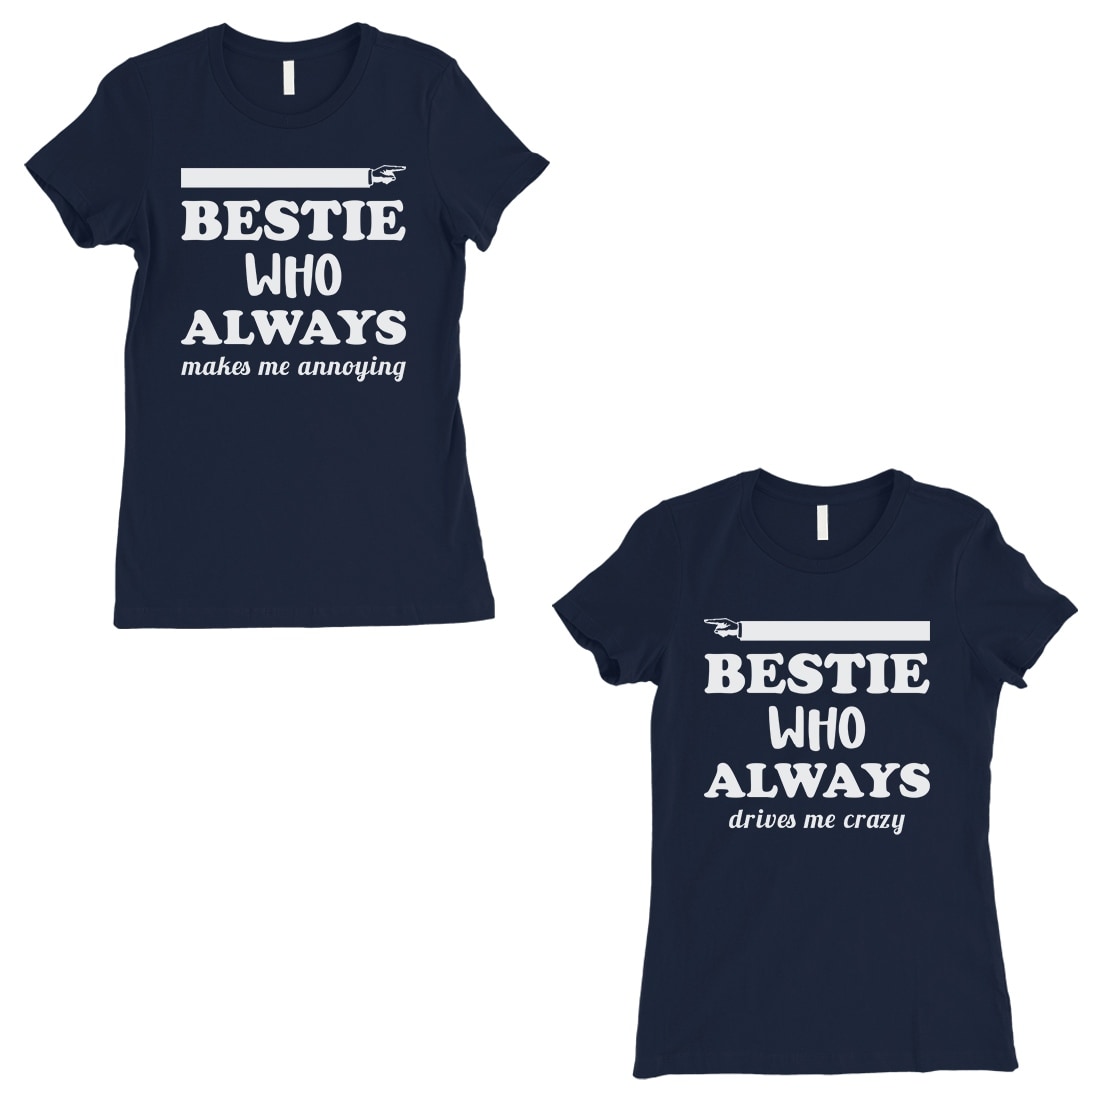 best friend birthday shirts ideas